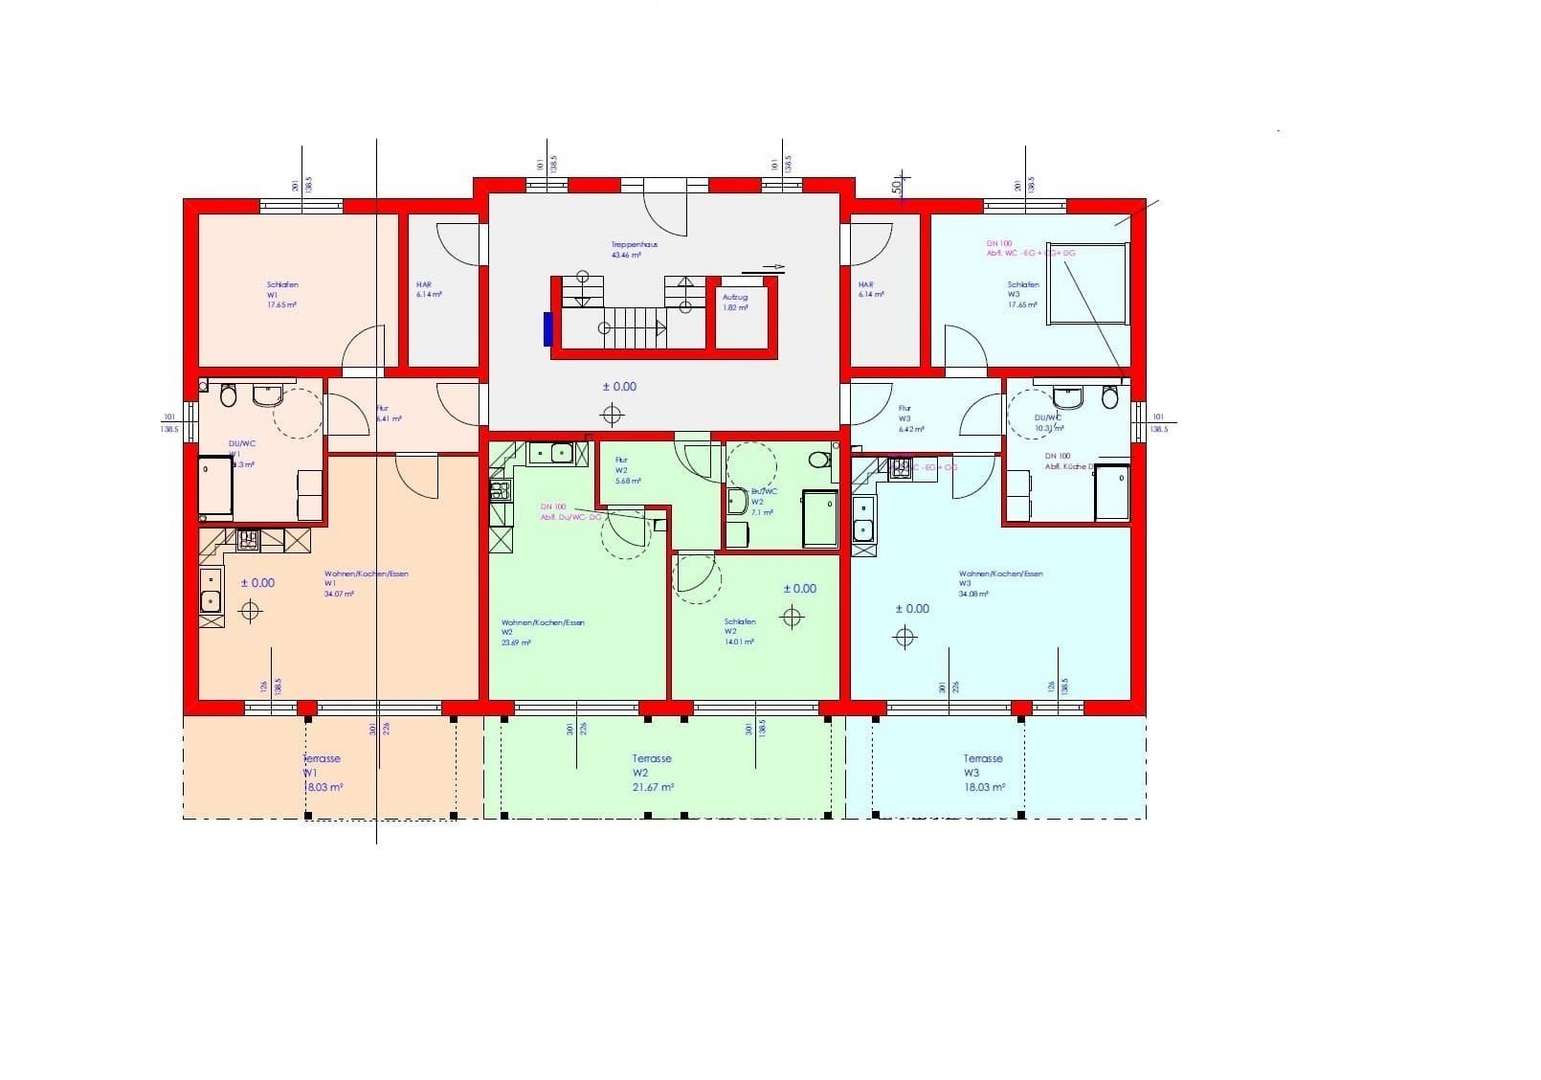 Grundriss Erdgeschoß - Erdgeschosswohnung in 37281 Wanfried mit 72m² kaufen